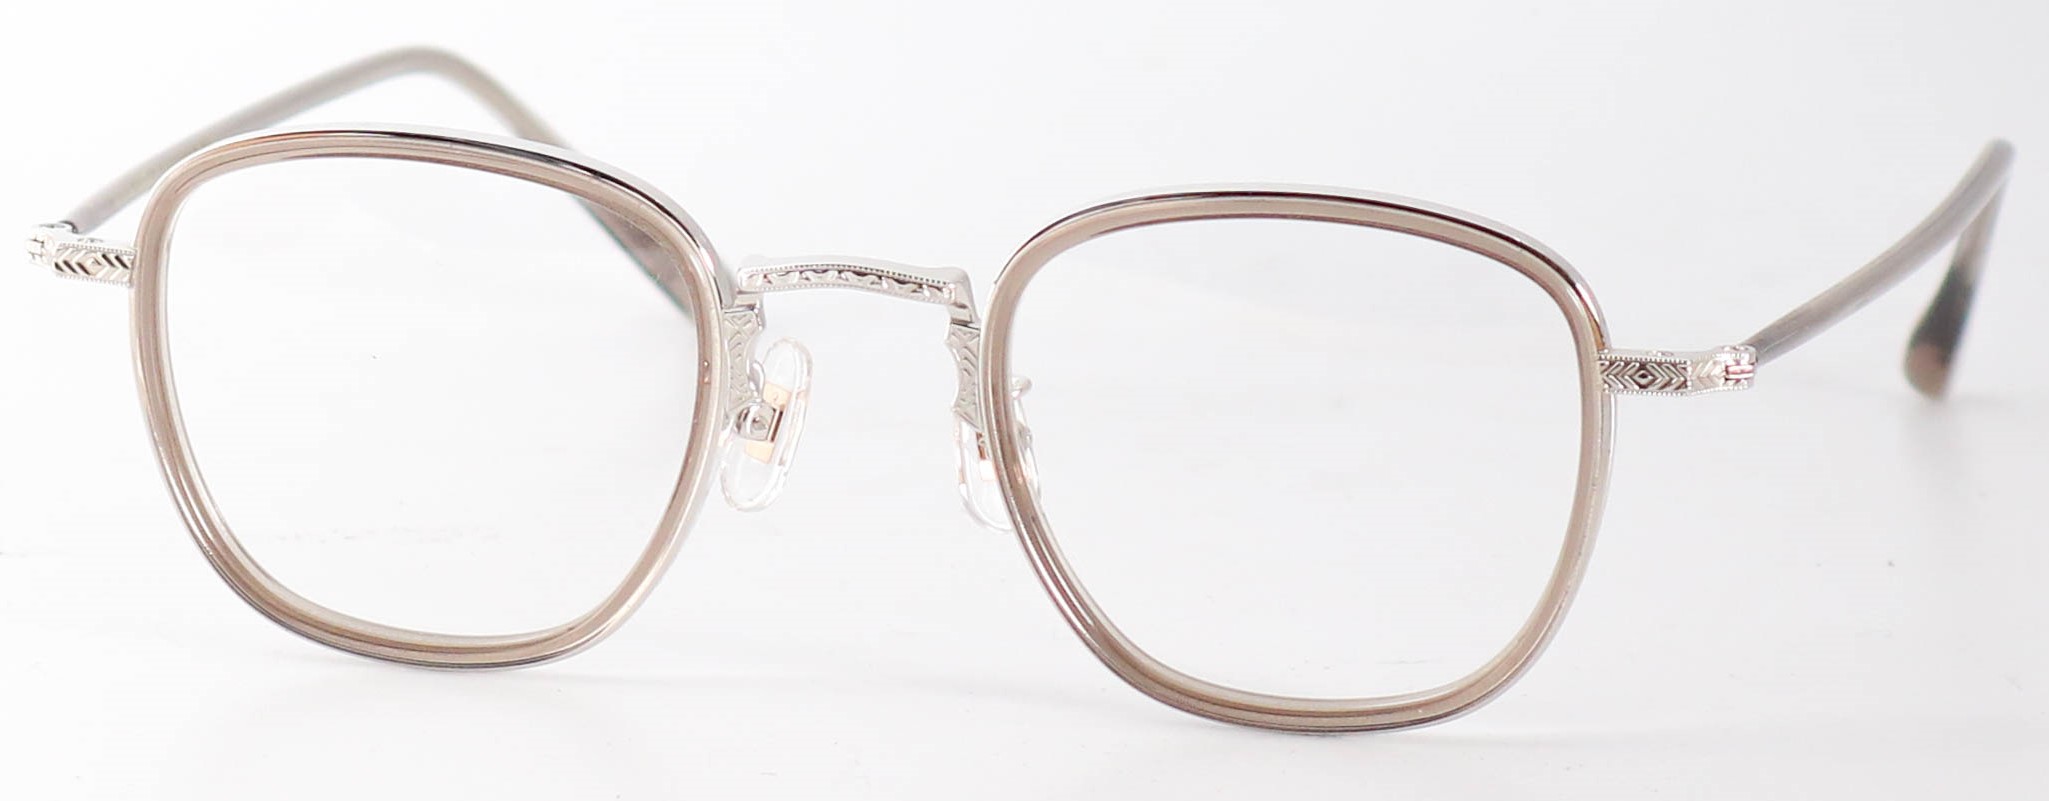 眼鏡のカラータイプC-6 Gray/Silver